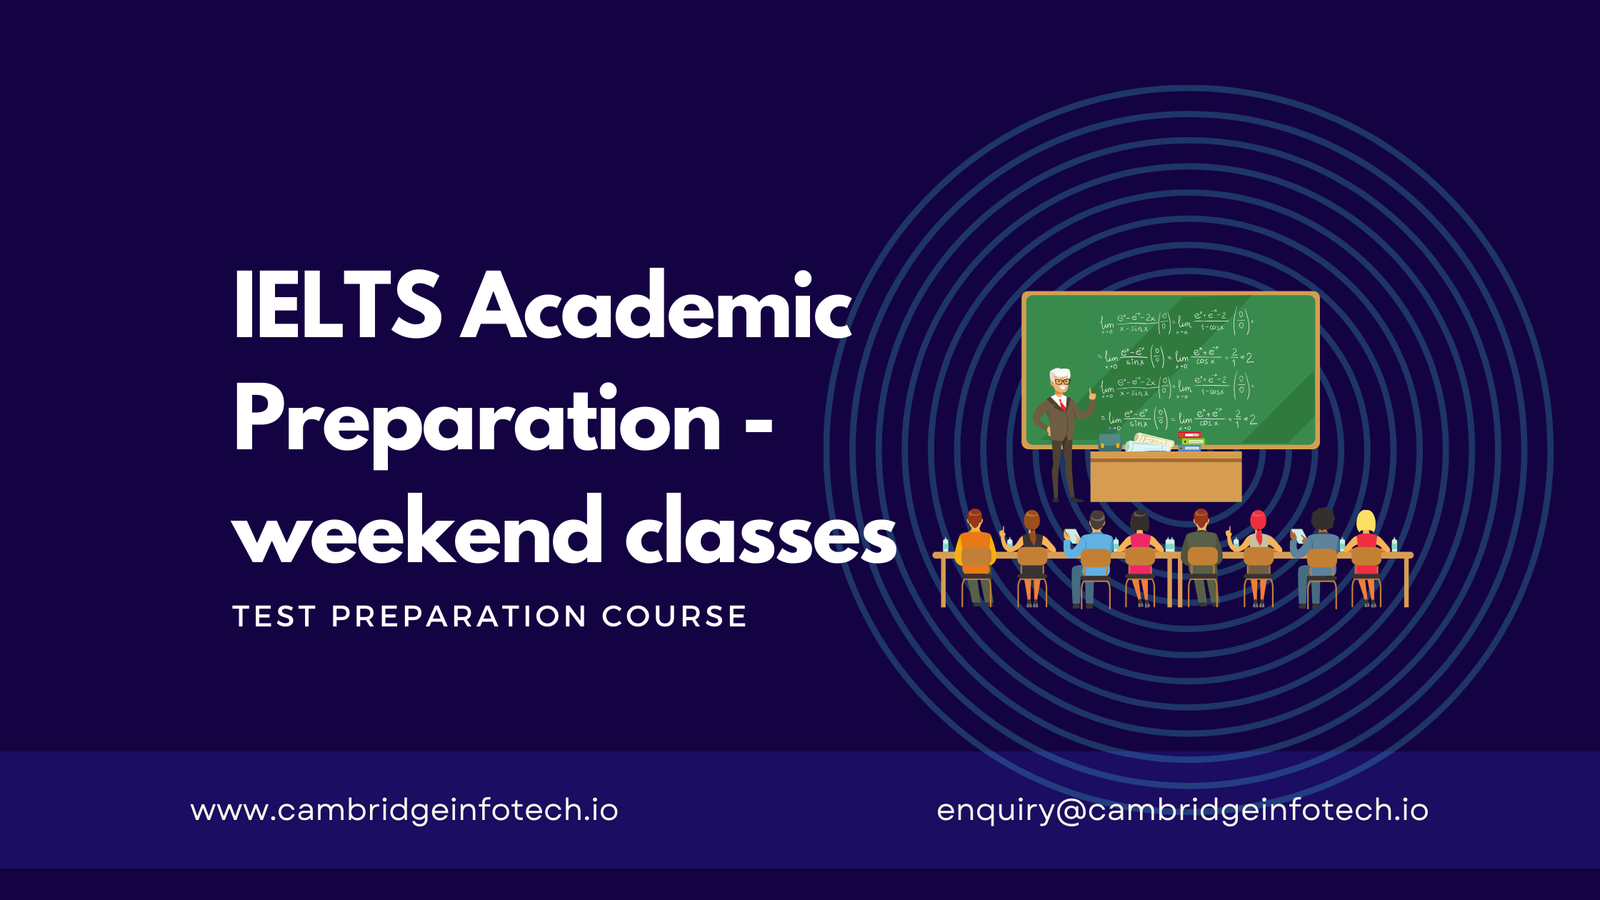 IELTS Academic Preparation - weekend classes